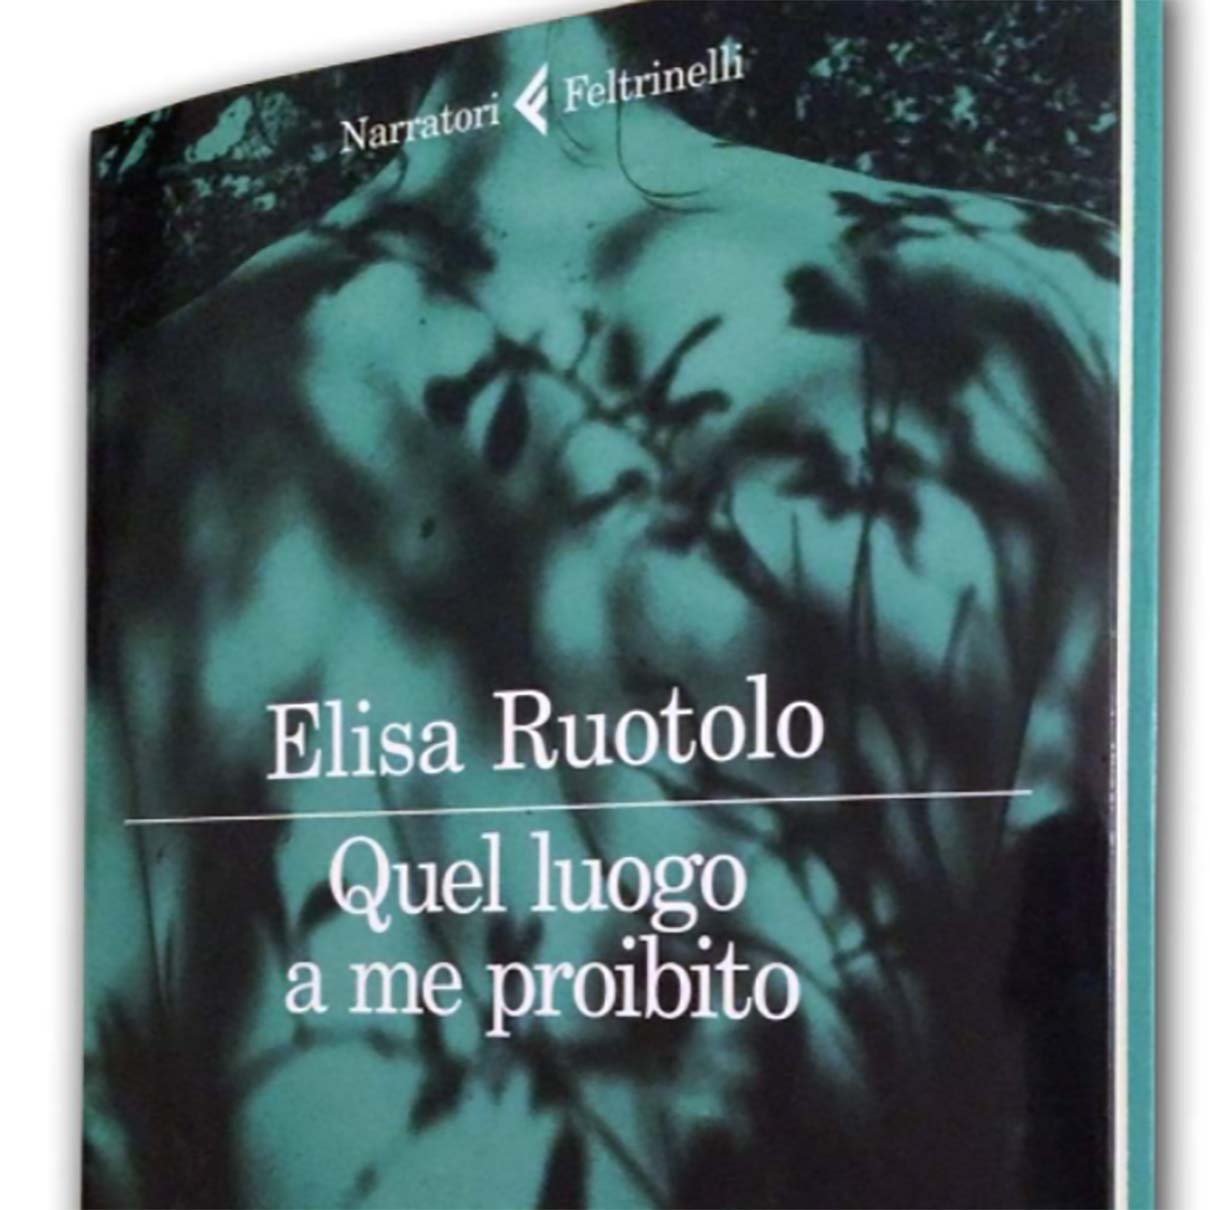 Elisa Ruotolo